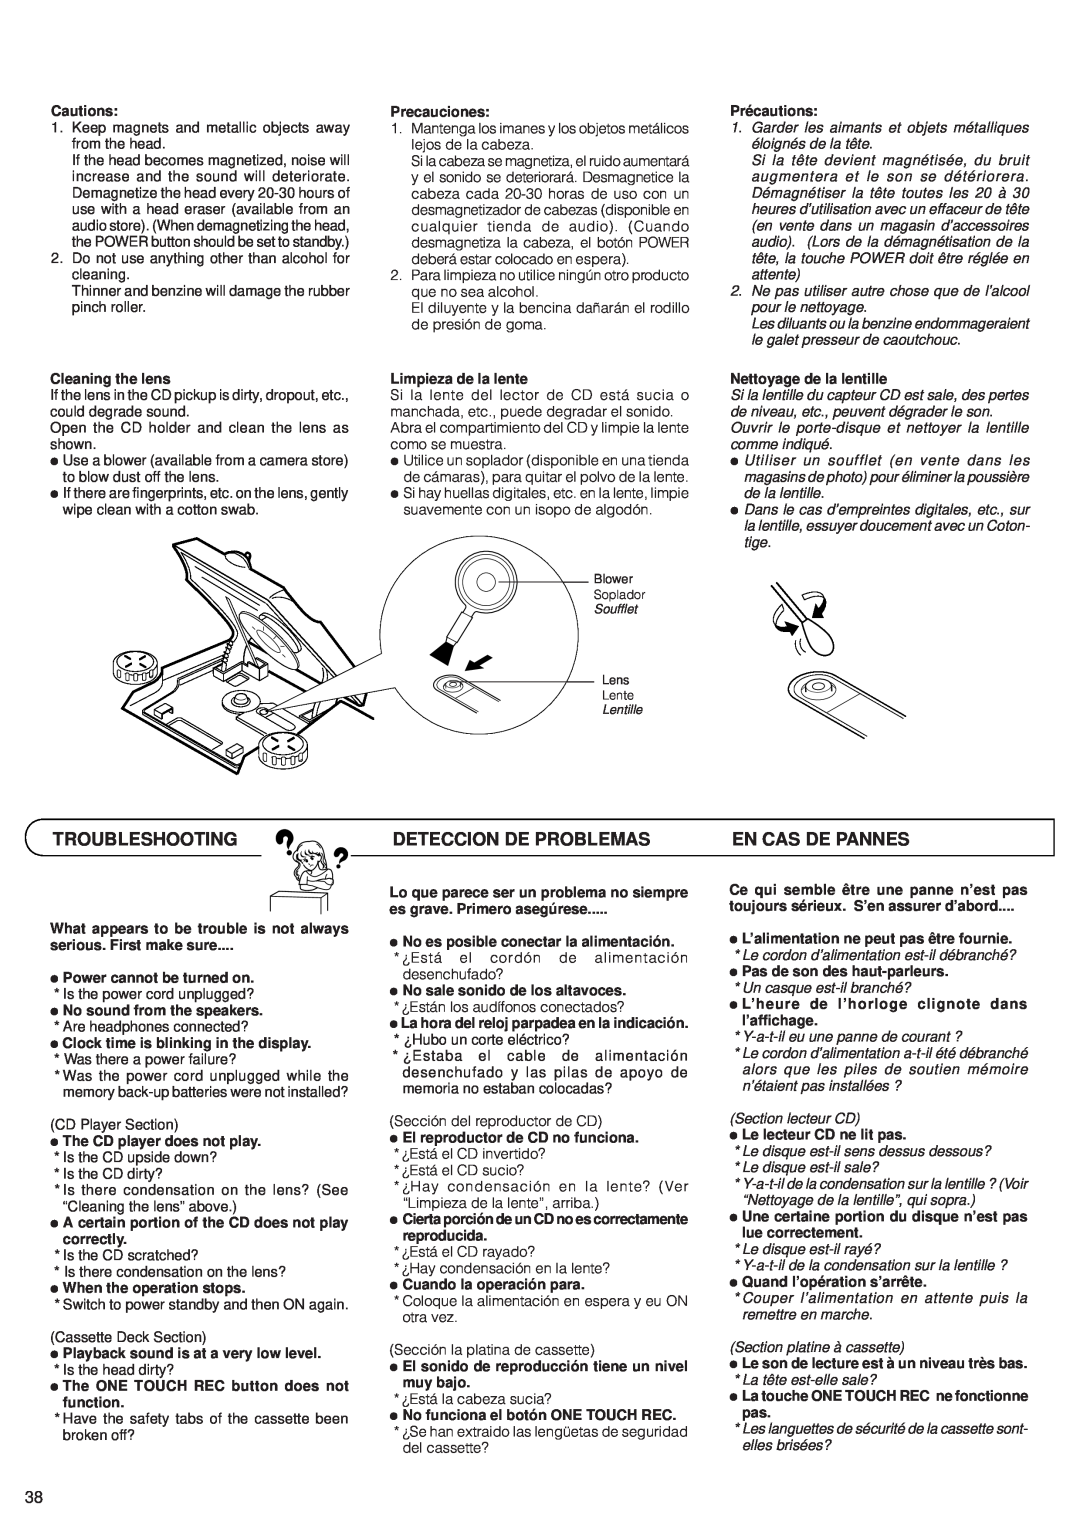 JVC RV-B99 manual Troubleshooting, Deteccion De Problemas, En Cas De Pannes 